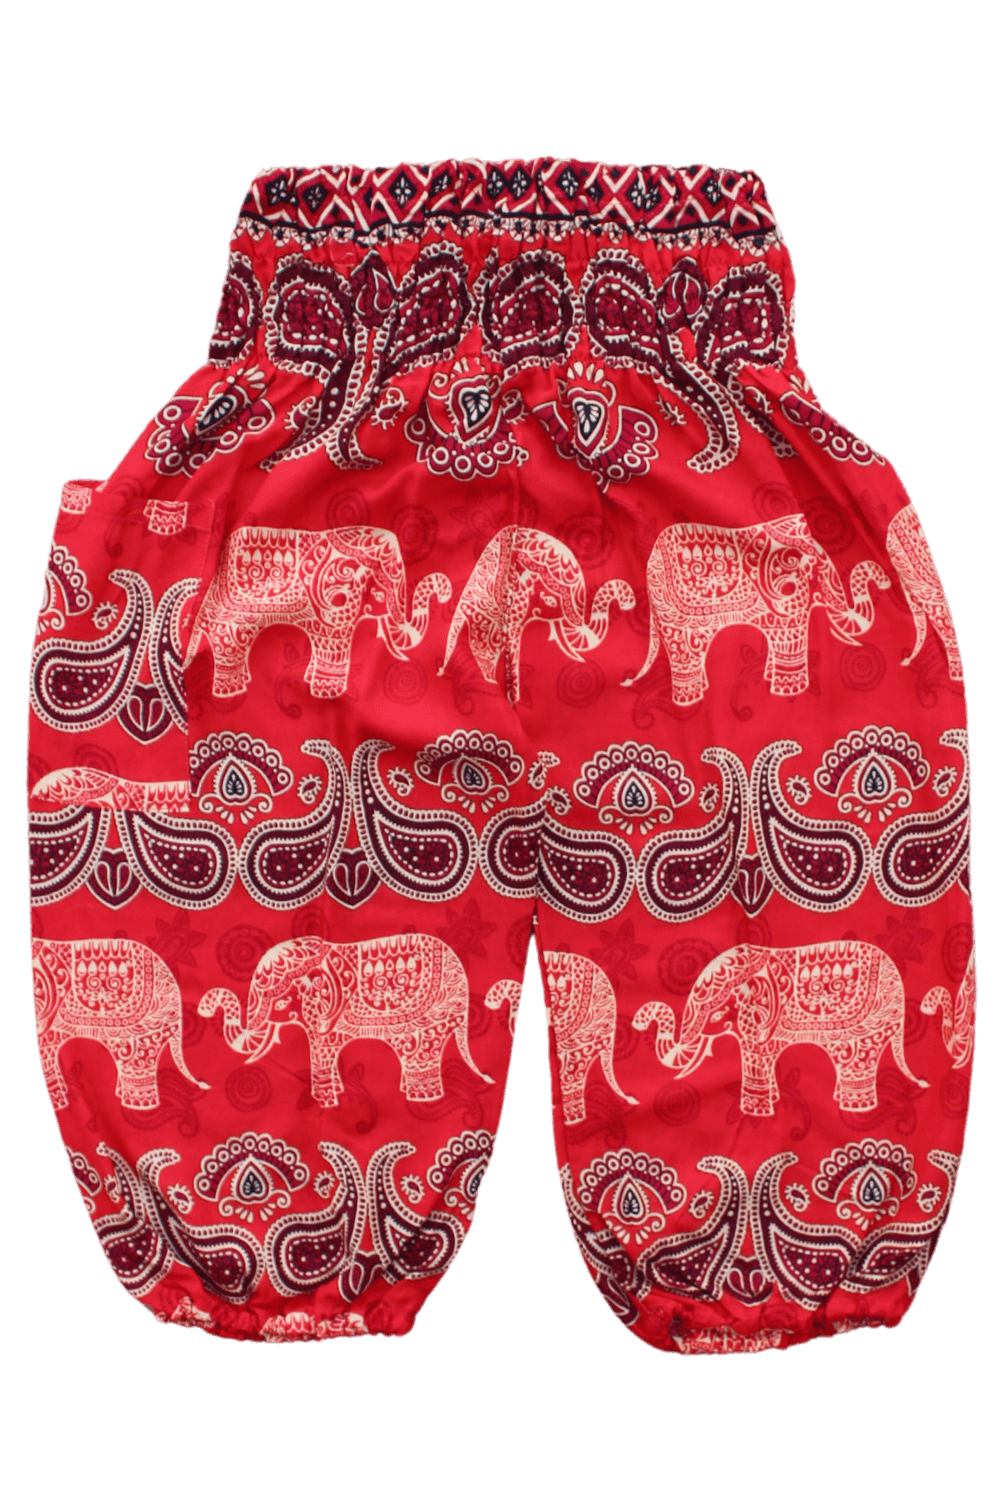 Malee Elephant Kids Harem Pants, elephant pants for kids from Bohemian Island